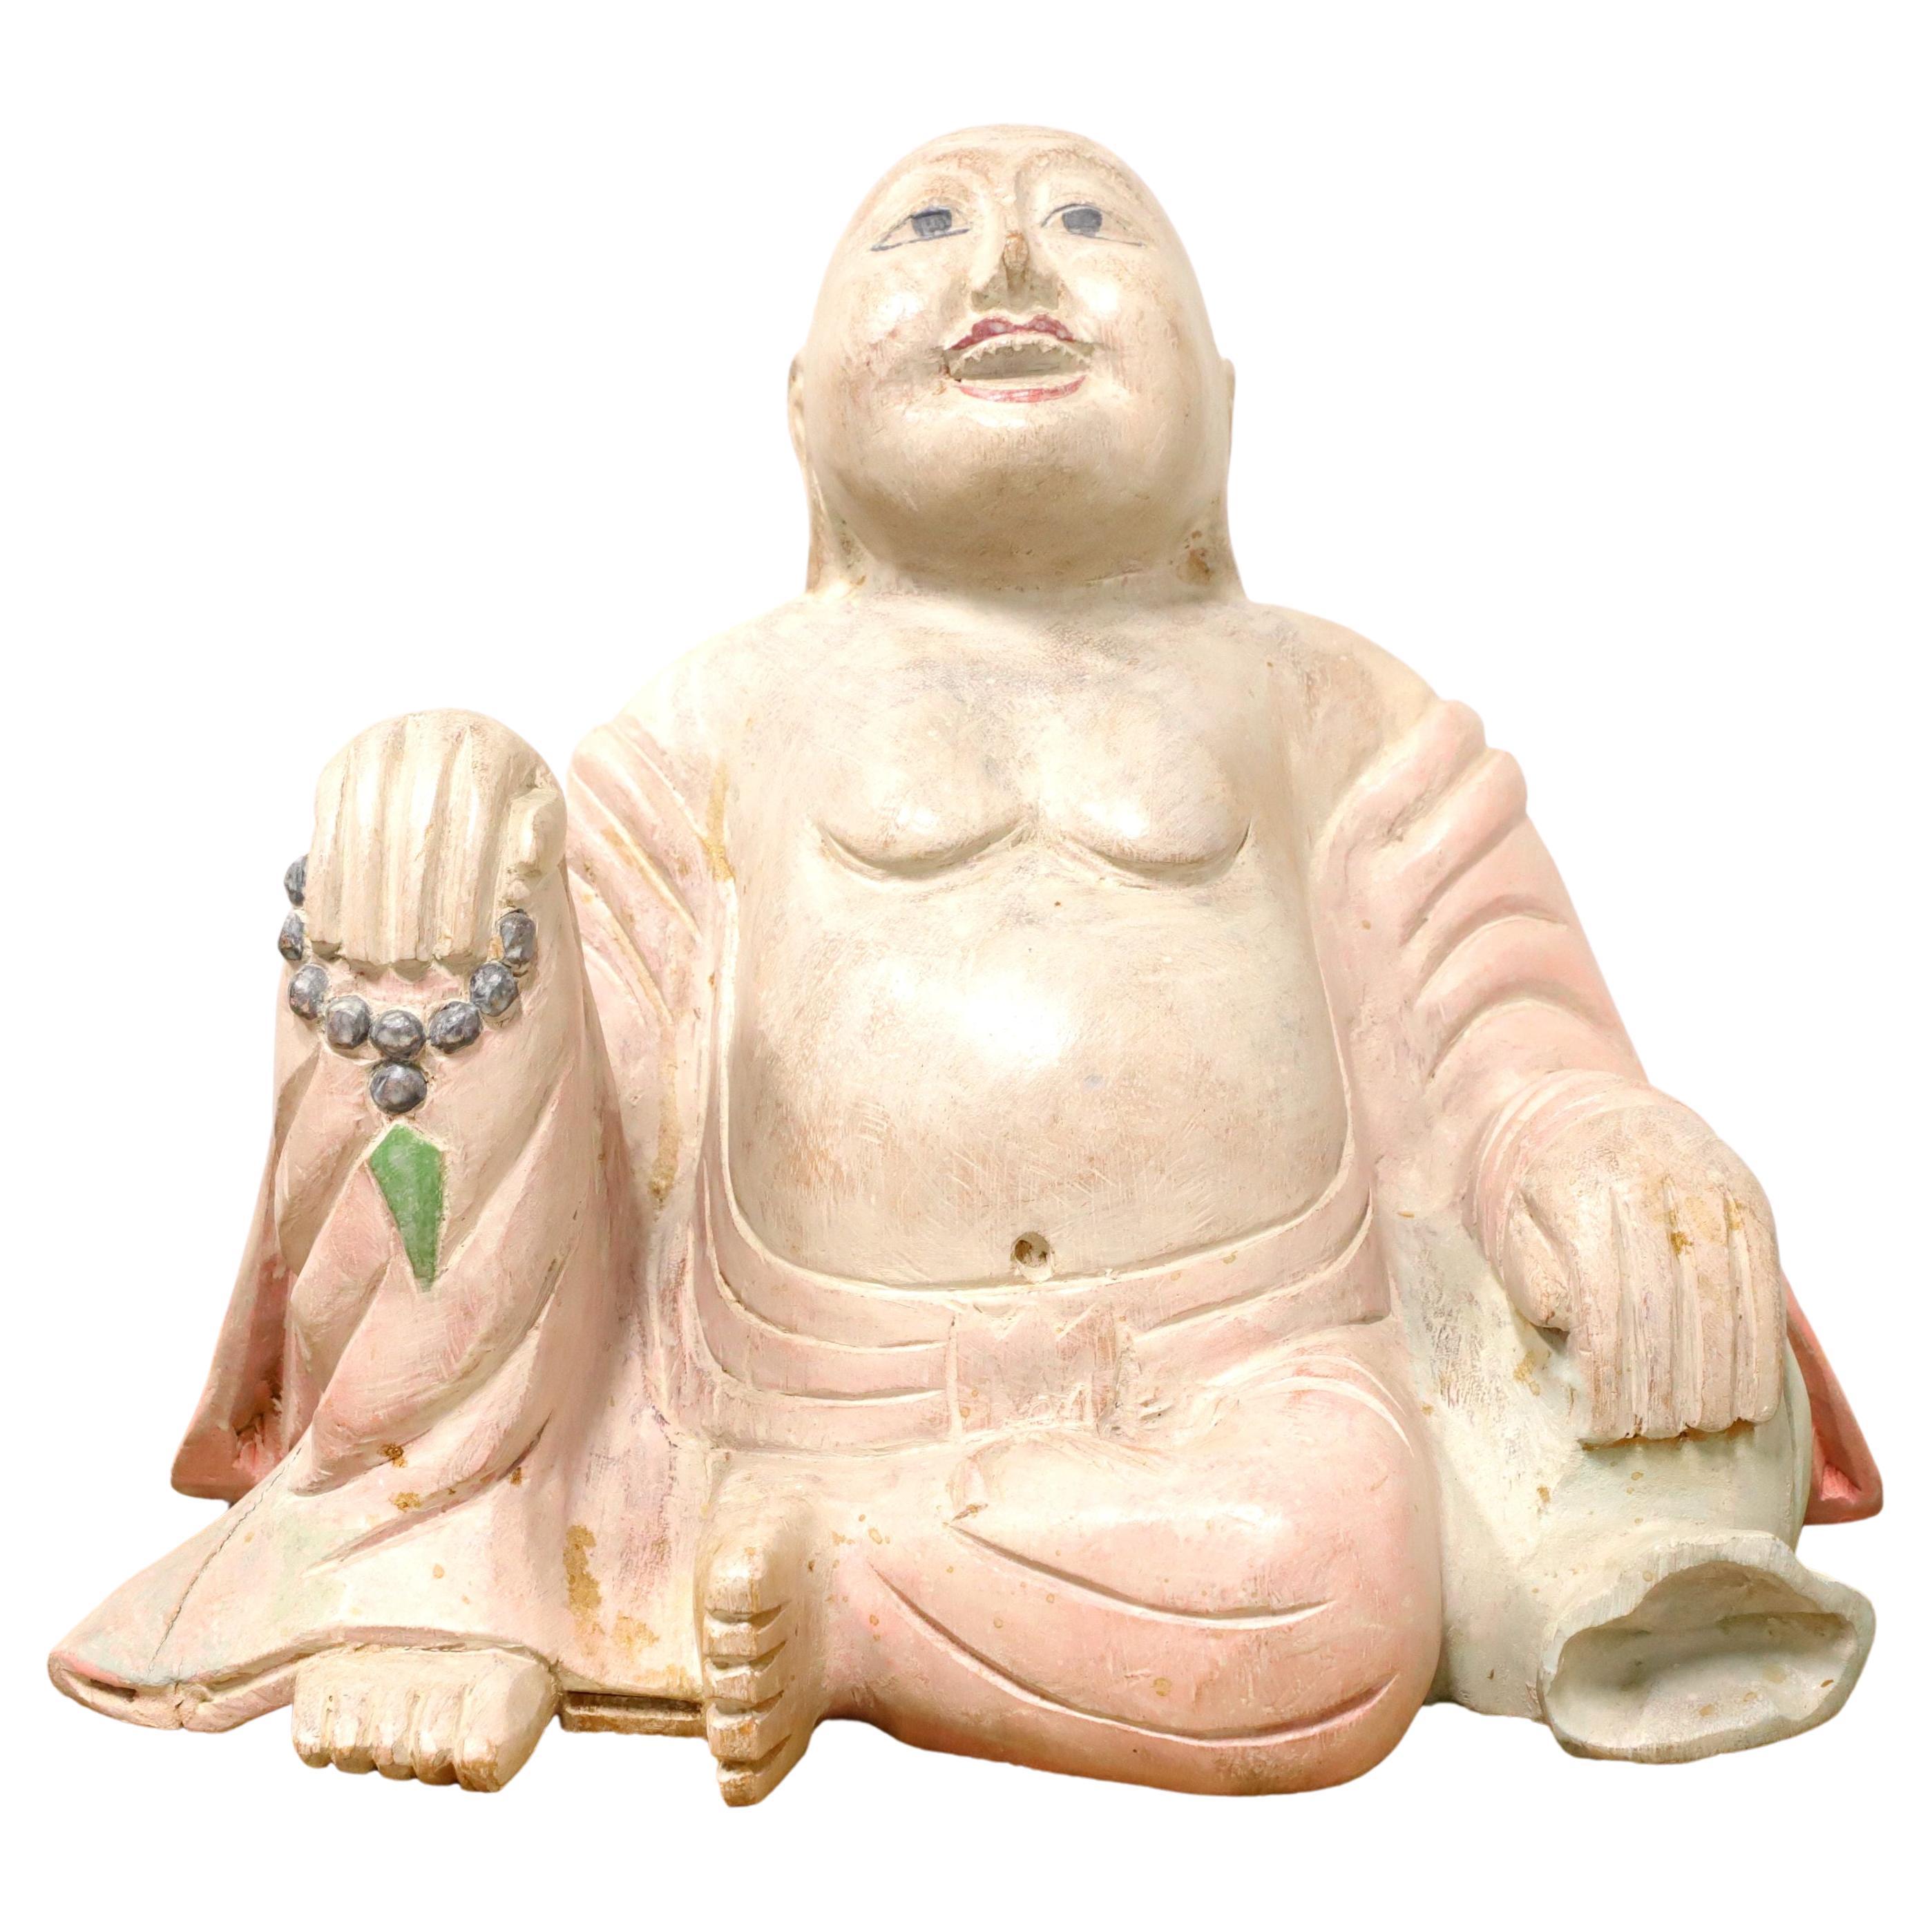 Geschnitzte Smiling-Buddha-Figur aus Holz, Mitte des 20. Jahrhunderts